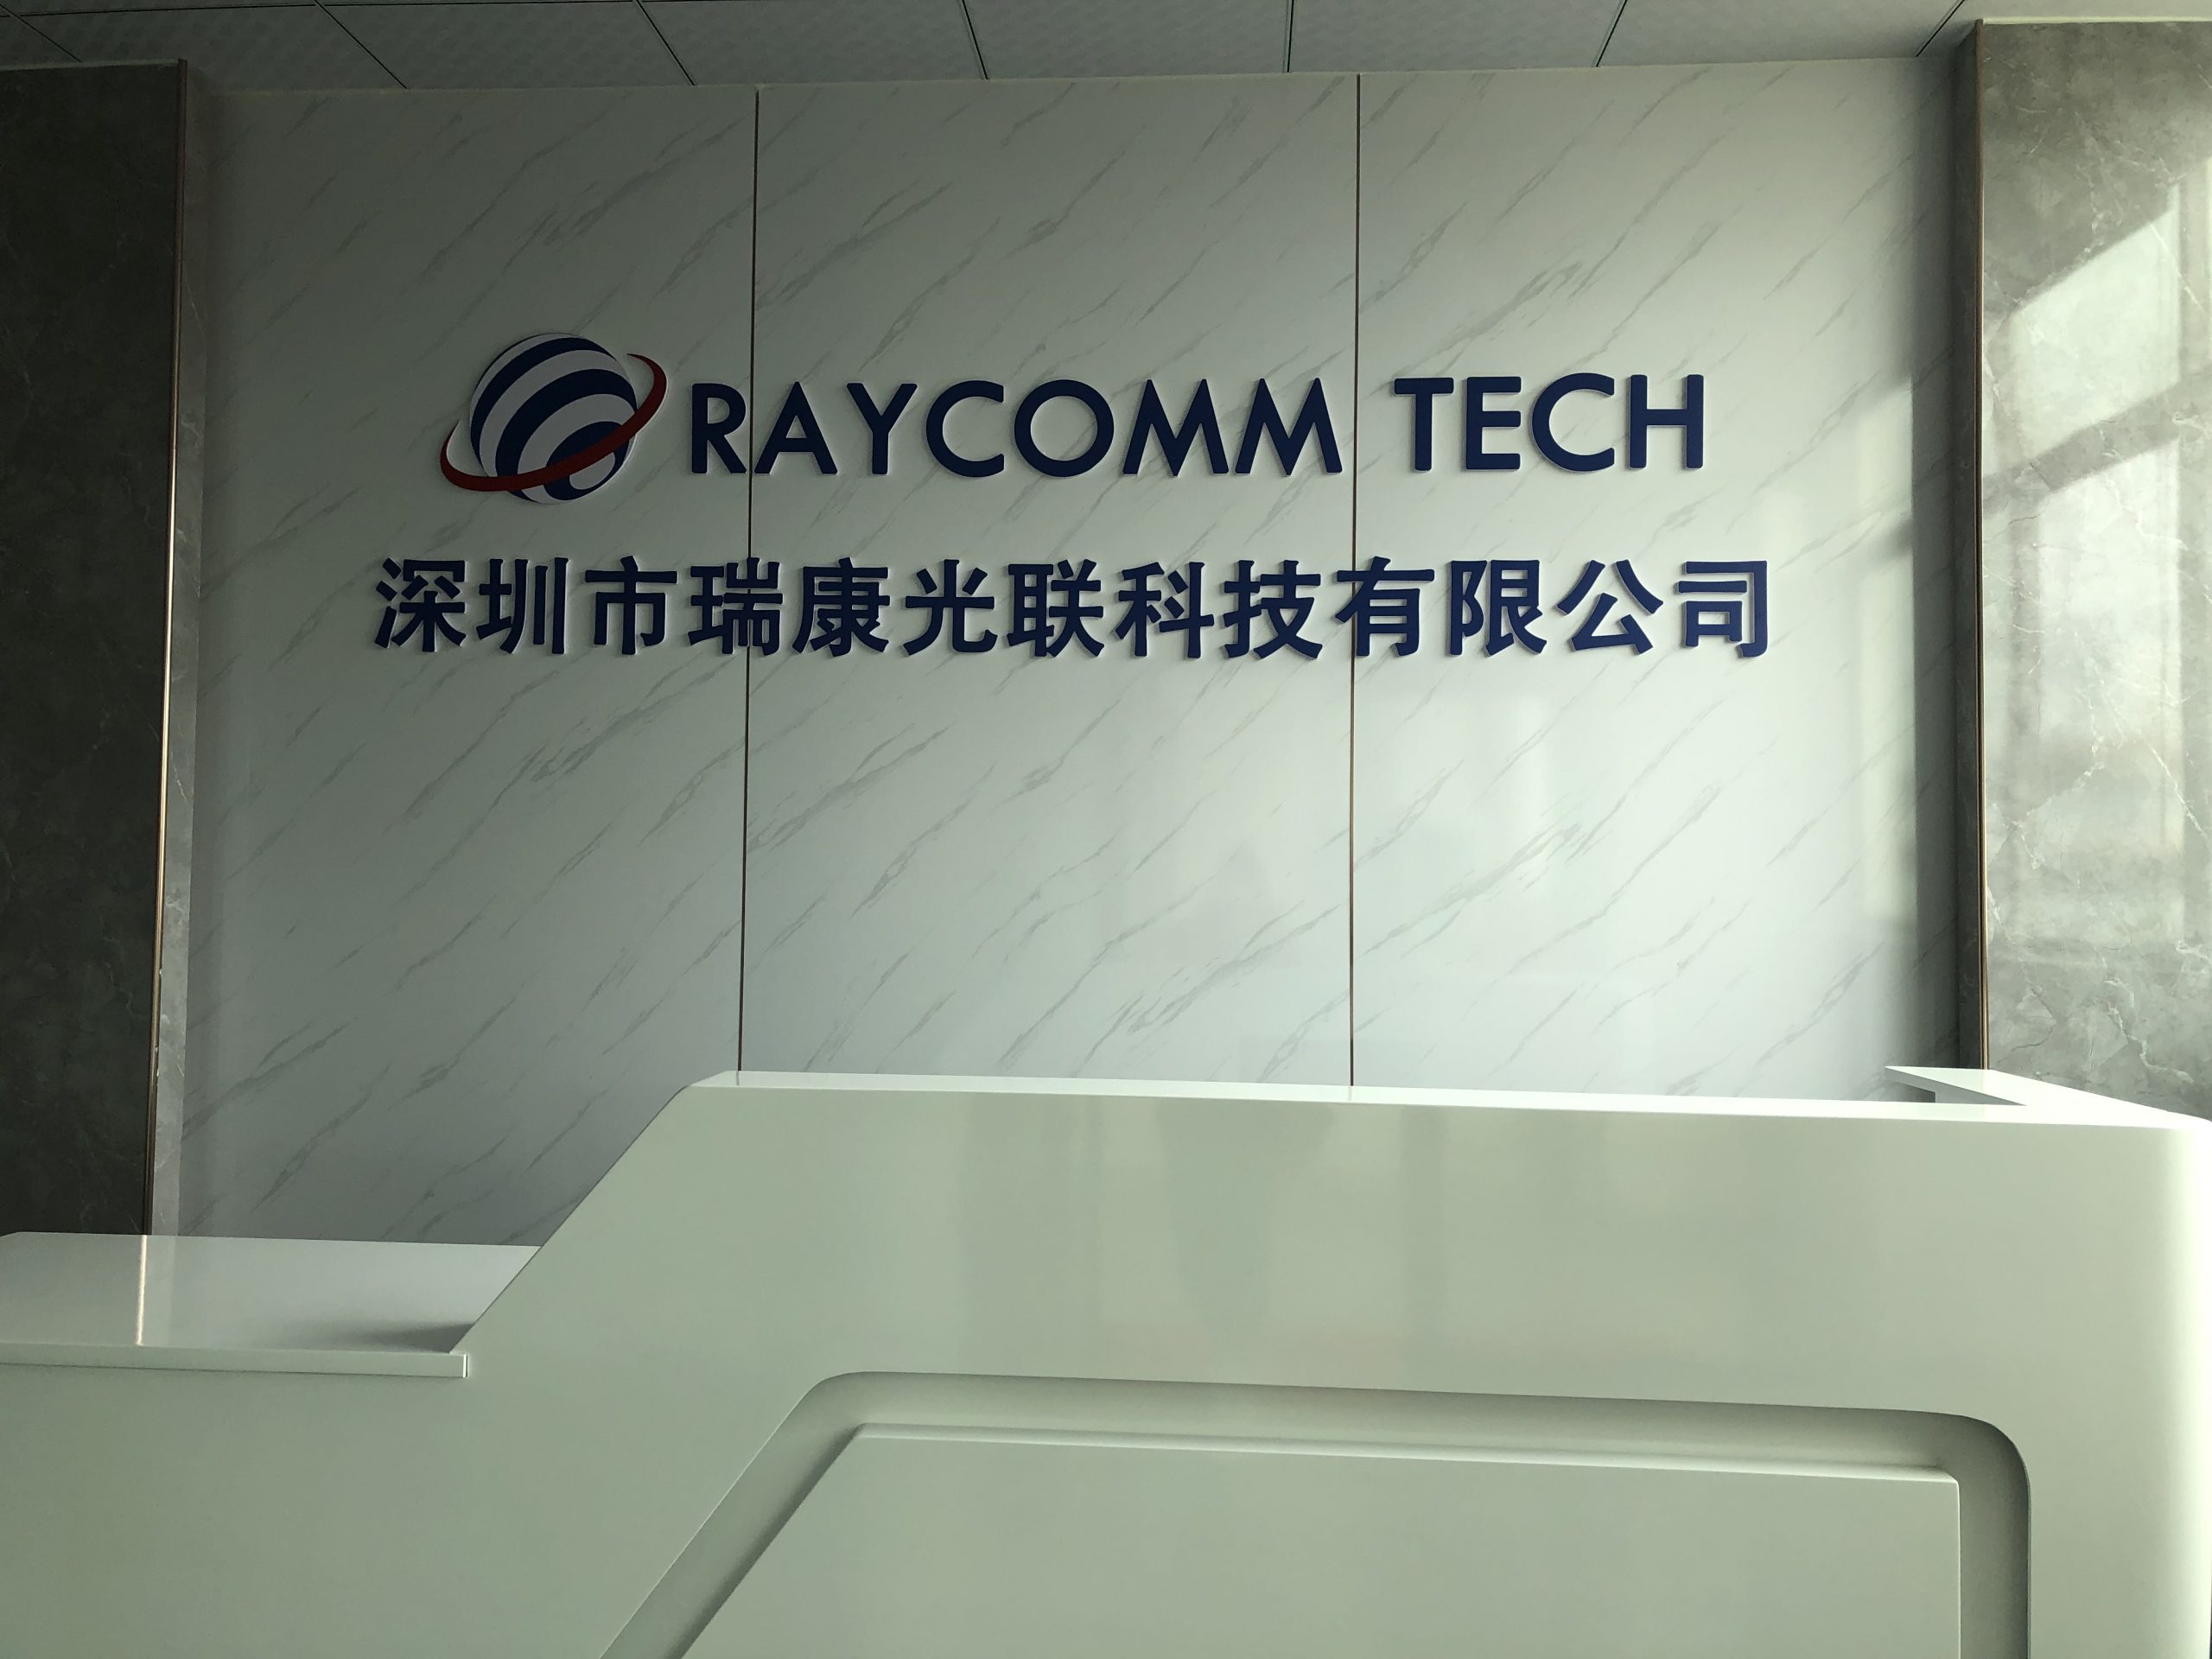 RAYCOMM TECH reception